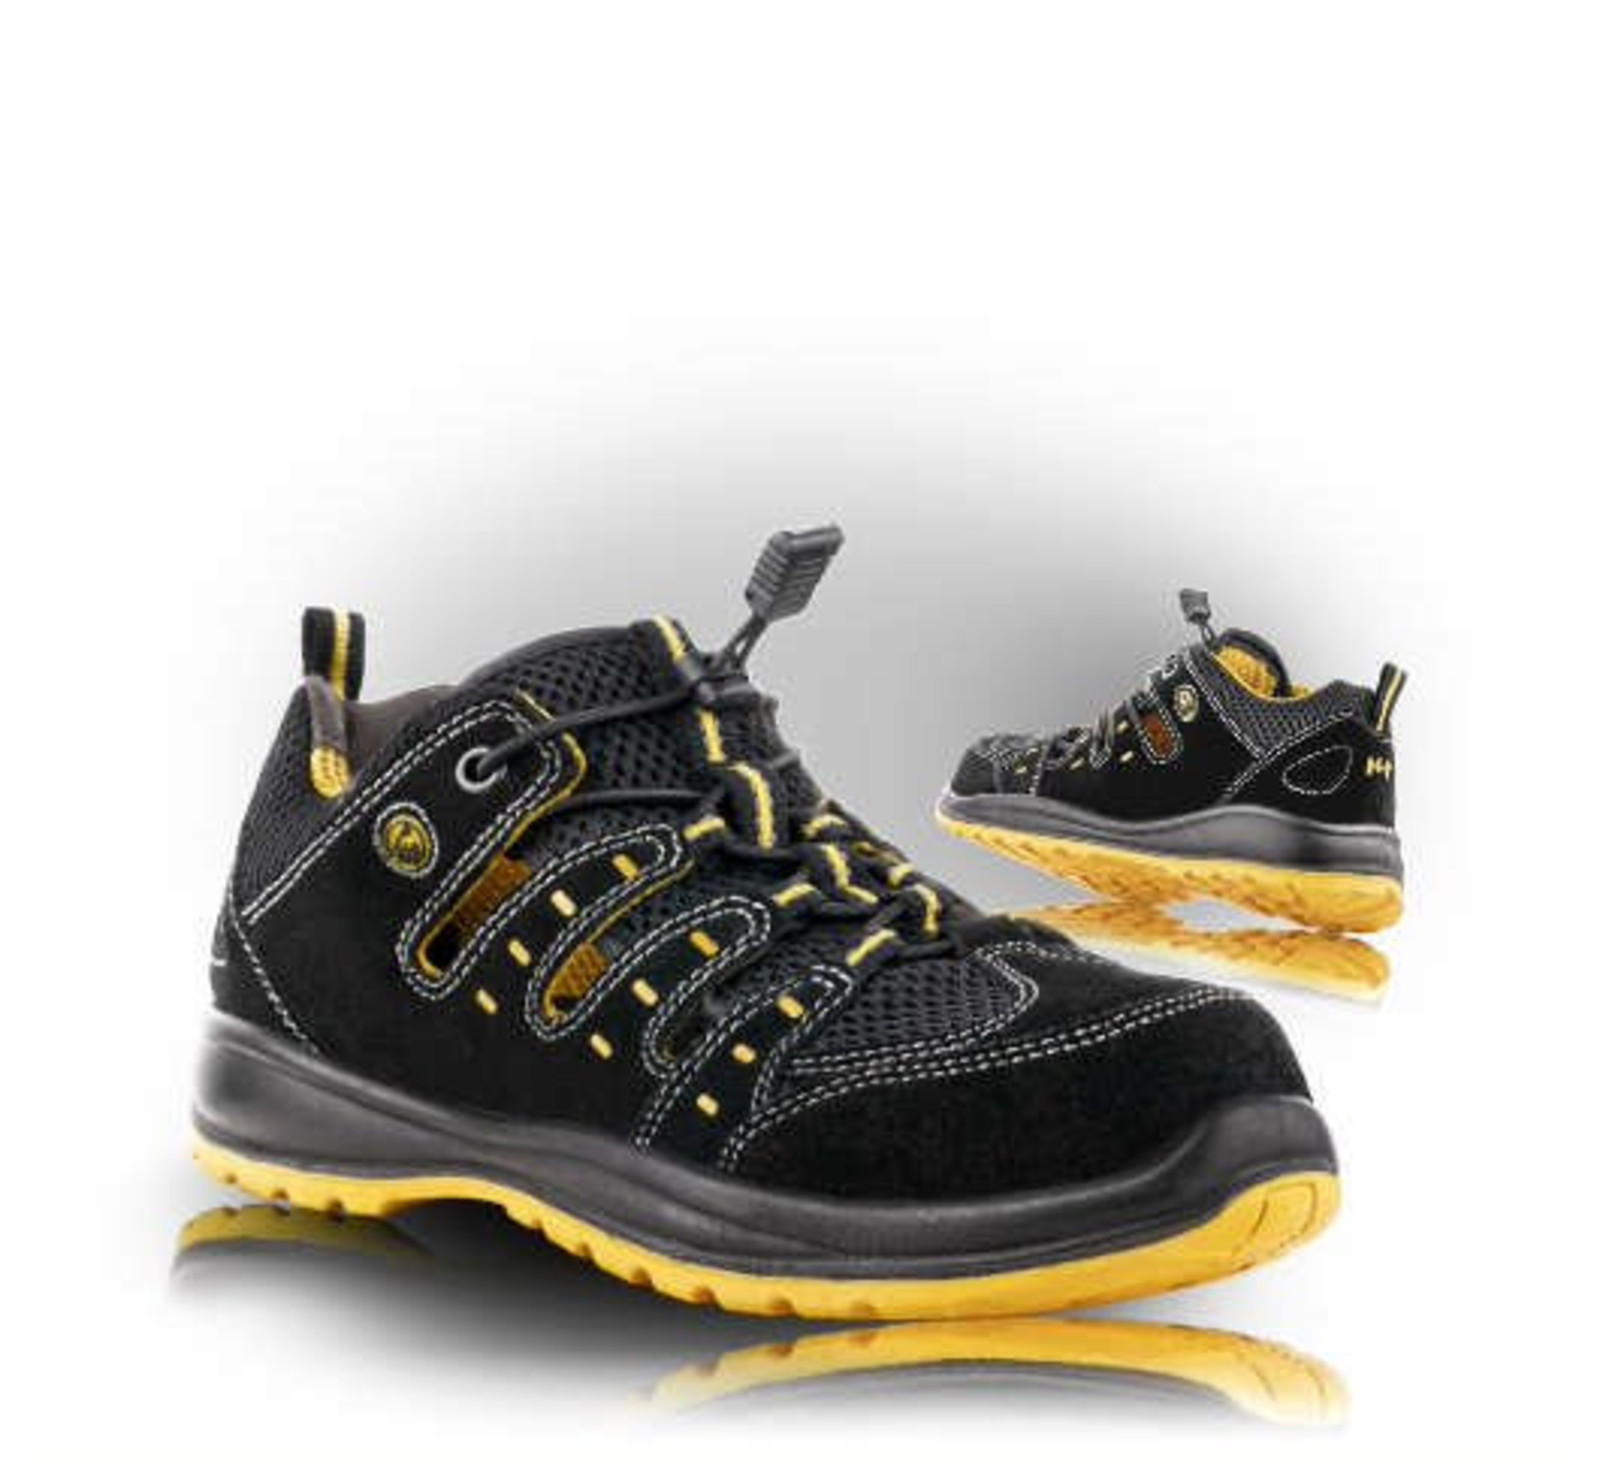 Bezpečnostné sandále Memphis S1 ESD - veľkosť: 45, farba: čierna/žltá